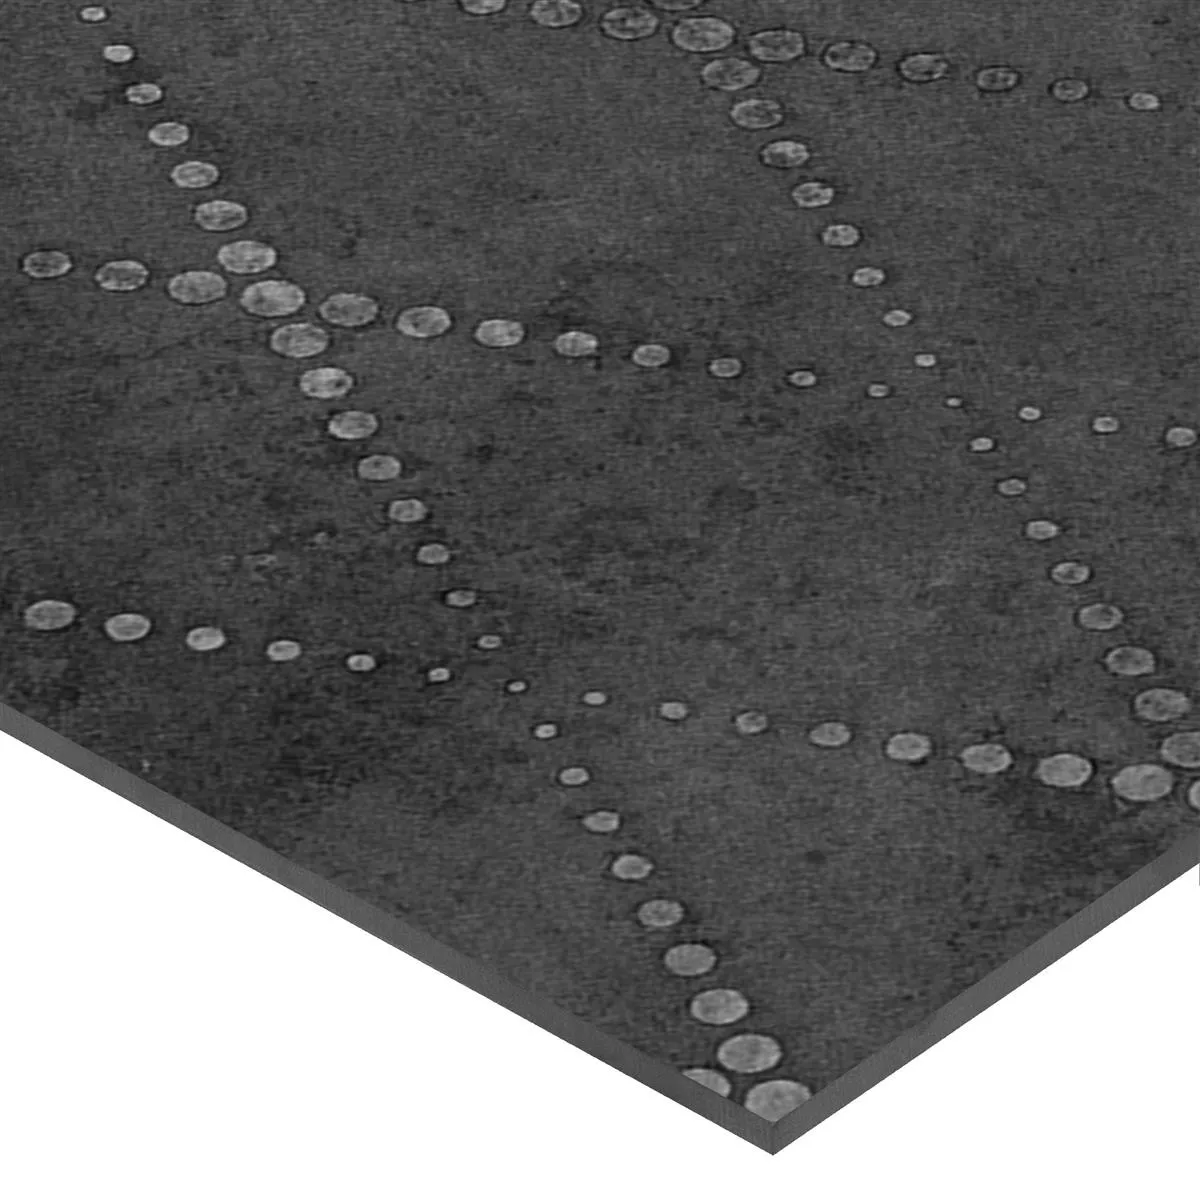 Πλακάκια Δαπέδου Chicago Μεταλλική Εμφάνιση Ανθρακίτης R9 - 18,5x18,5 cm Pattern